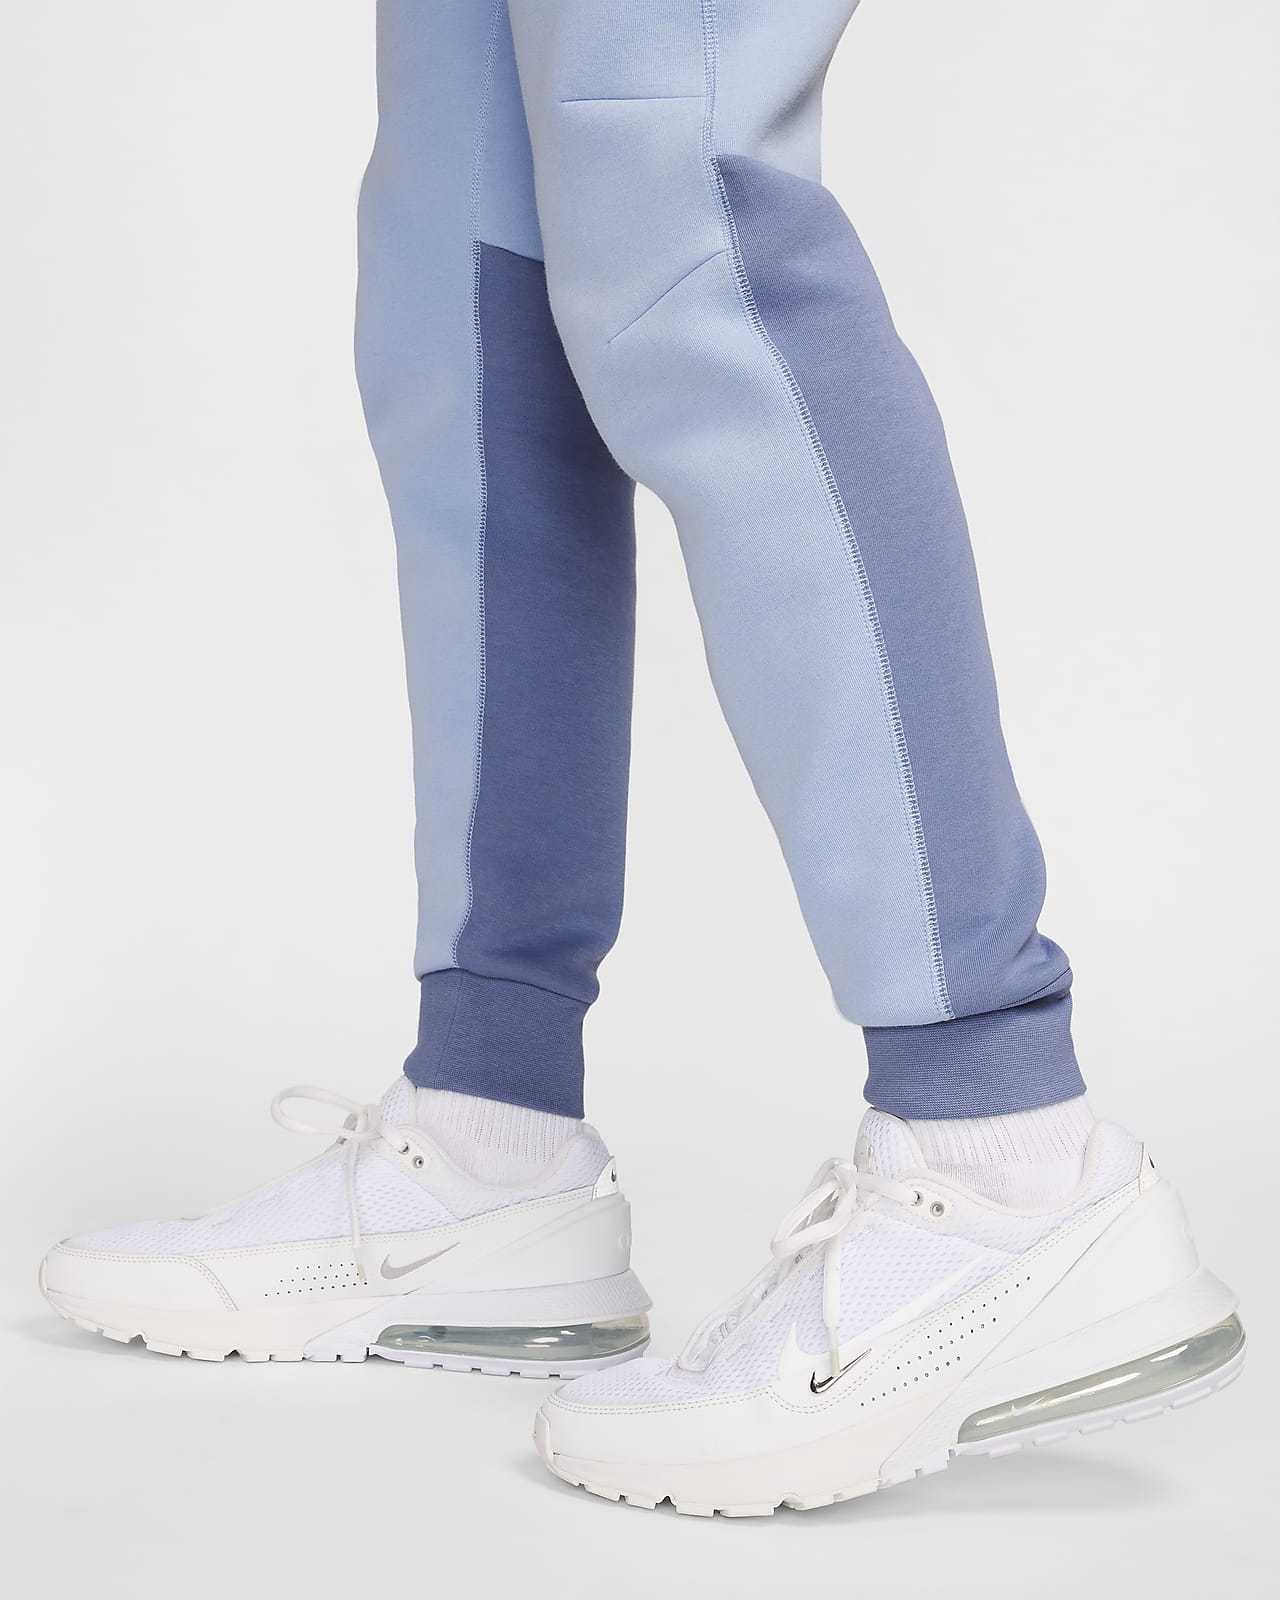 Nike - W Sportswear Tech Fleece Joggers